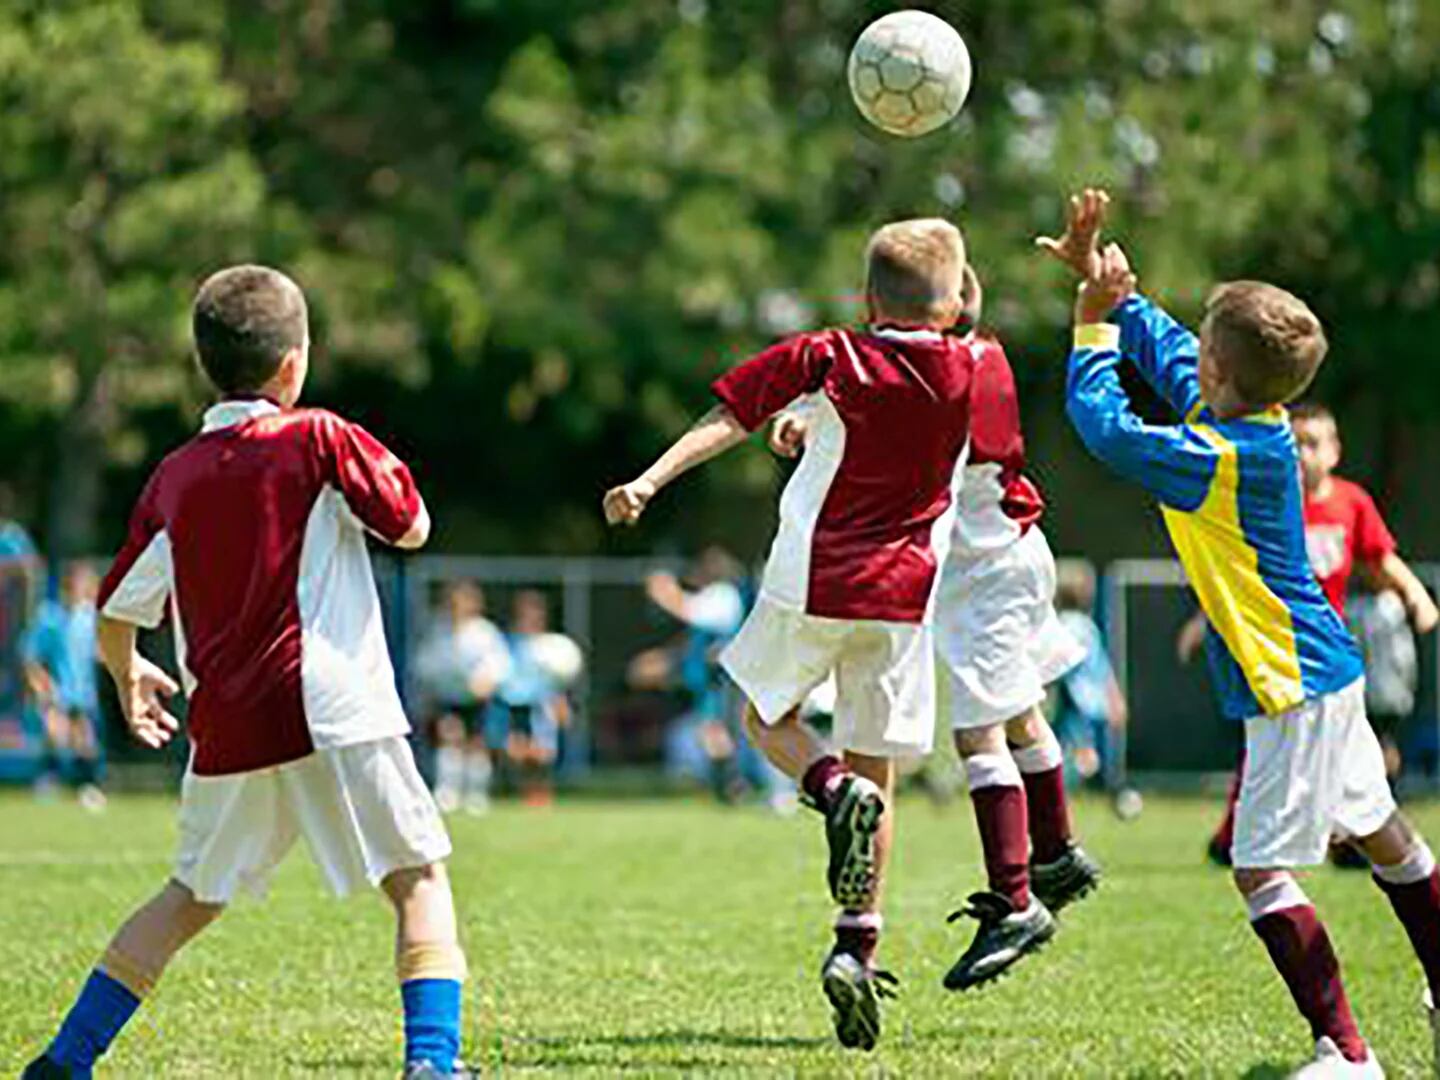 El baby fútbol uruguayo analiza los pasos a dar tras recomendación de  prohibir los cabezazos